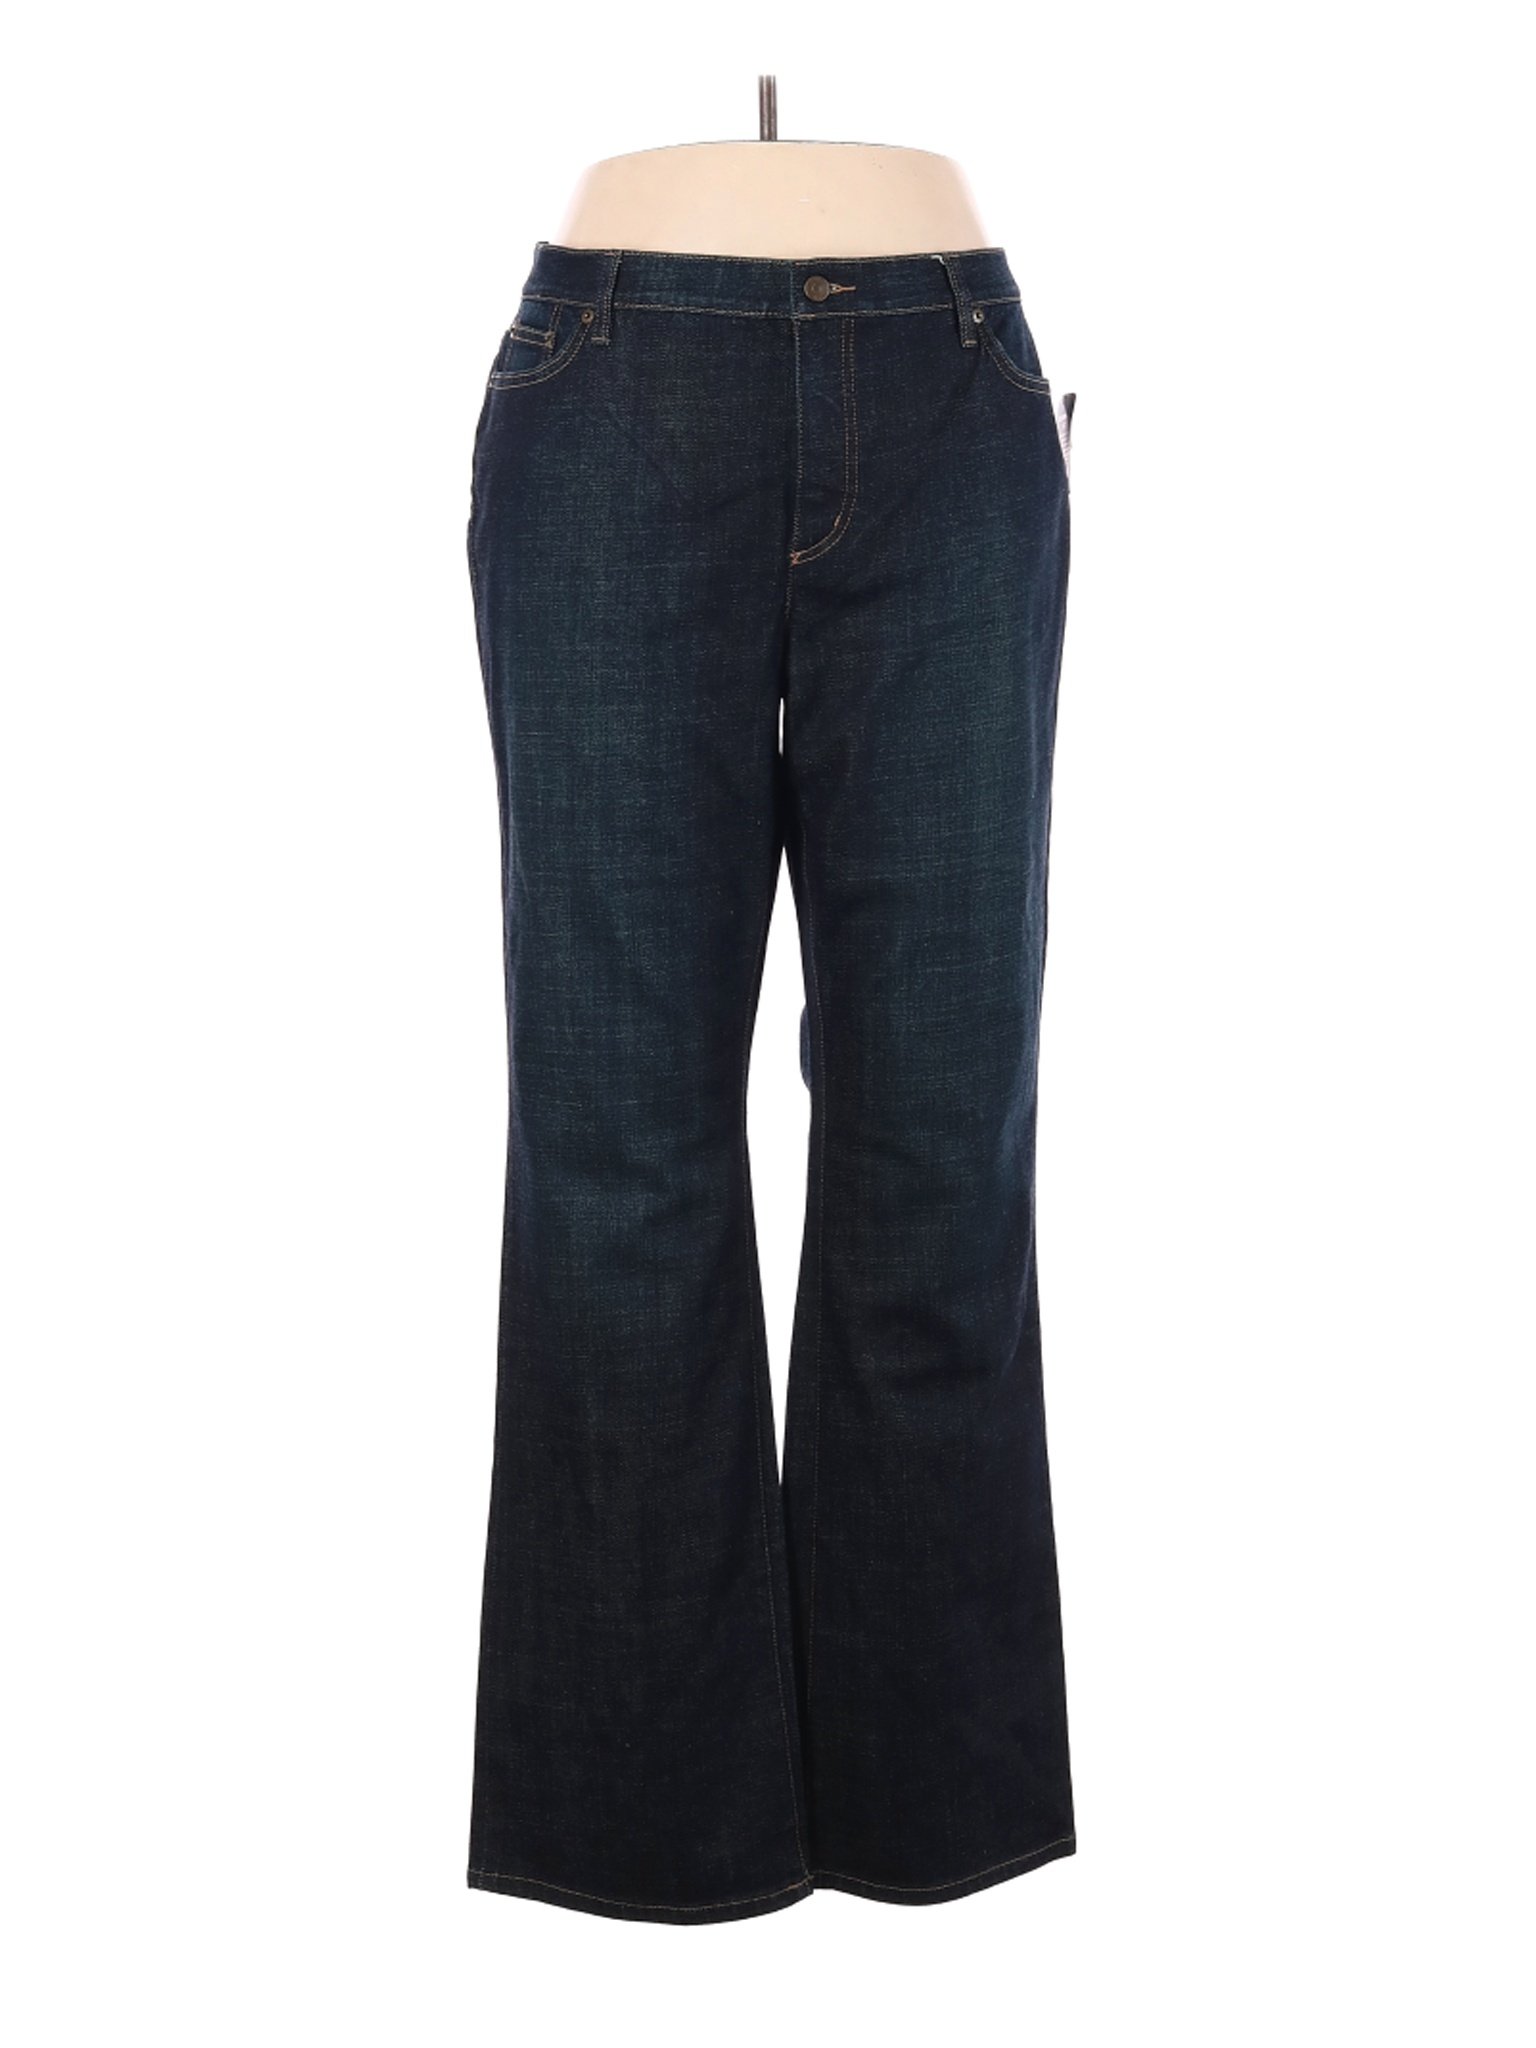 NWT Polo Jeans Co. by Ralph Lauren Women Blue Jeans 18 Plus | eBay